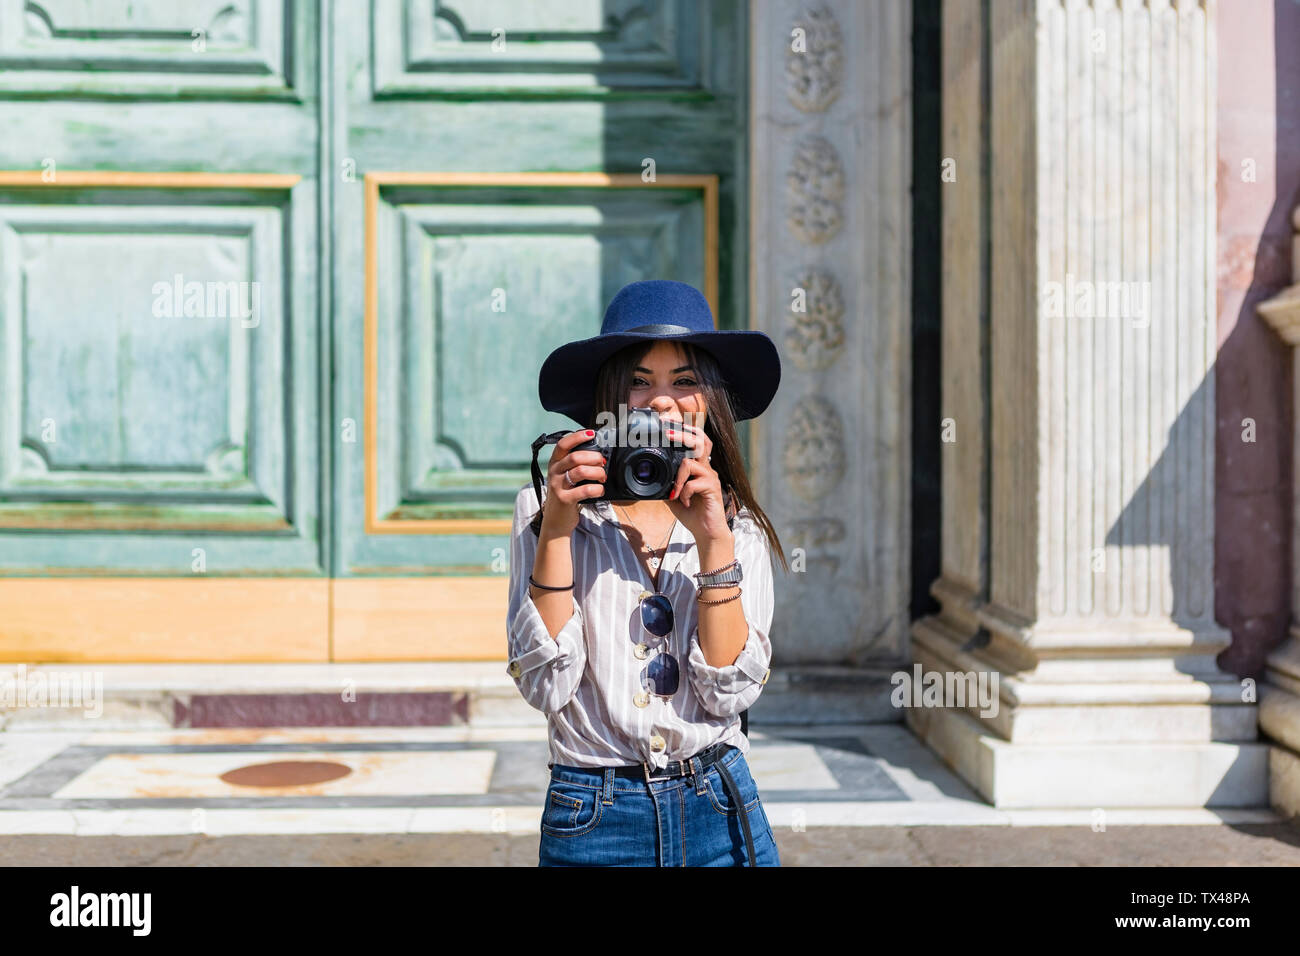 Italie, Florence, portrait of smiling young'prendre des photos avec l'appareil photo Banque D'Images